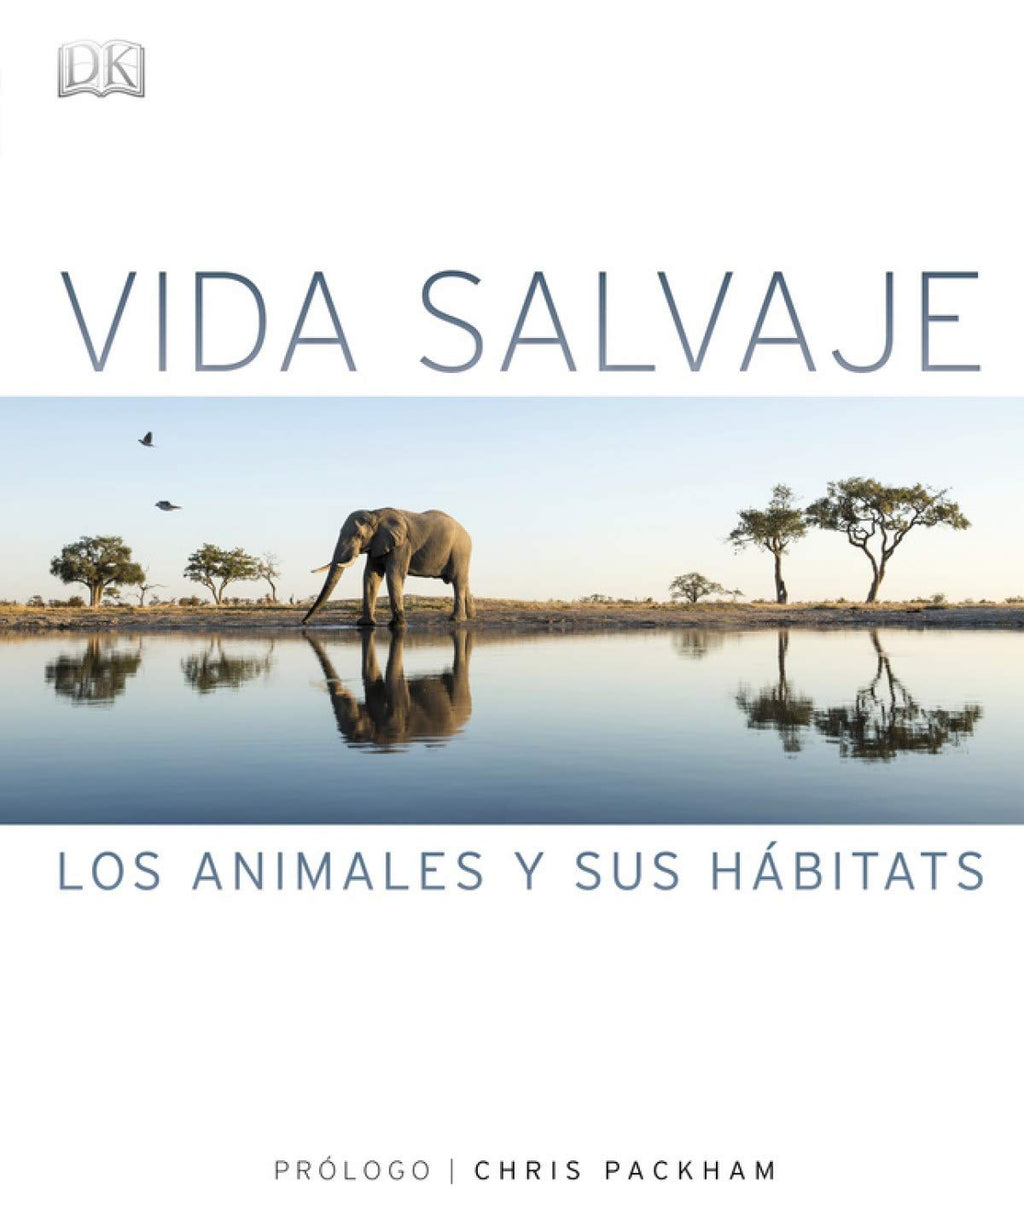 Vida Salvaje: Los animales y sus hábitats